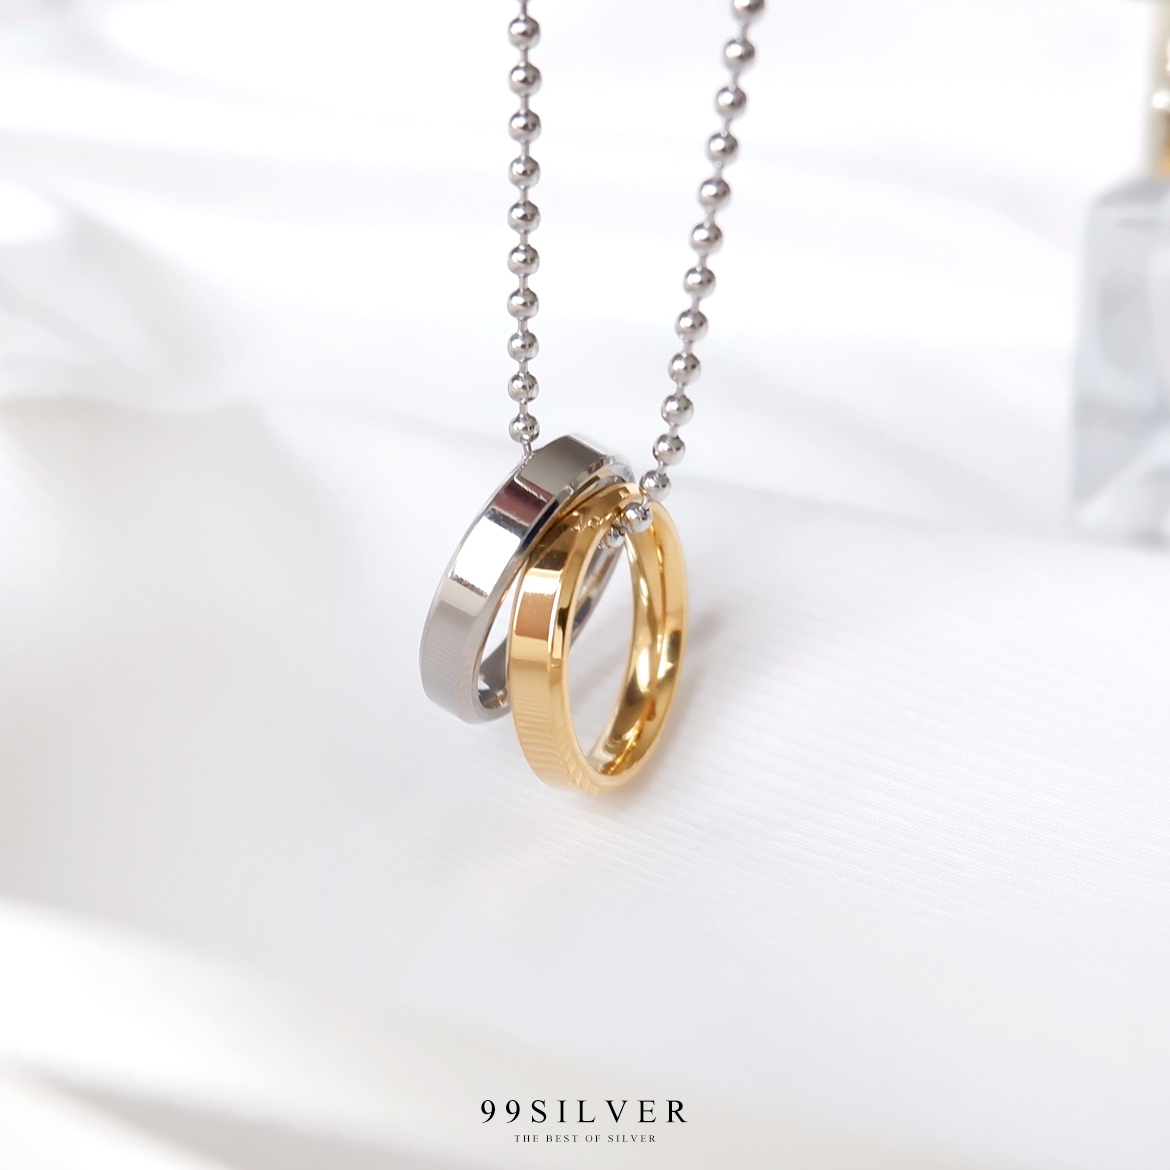 สร้อยจี้แหวนคู่ ตัวเรือนแหวนเป็นสแตนเลสแท้ สีเงินและสีทอง มาพร้อมสร้อยสวยงาม